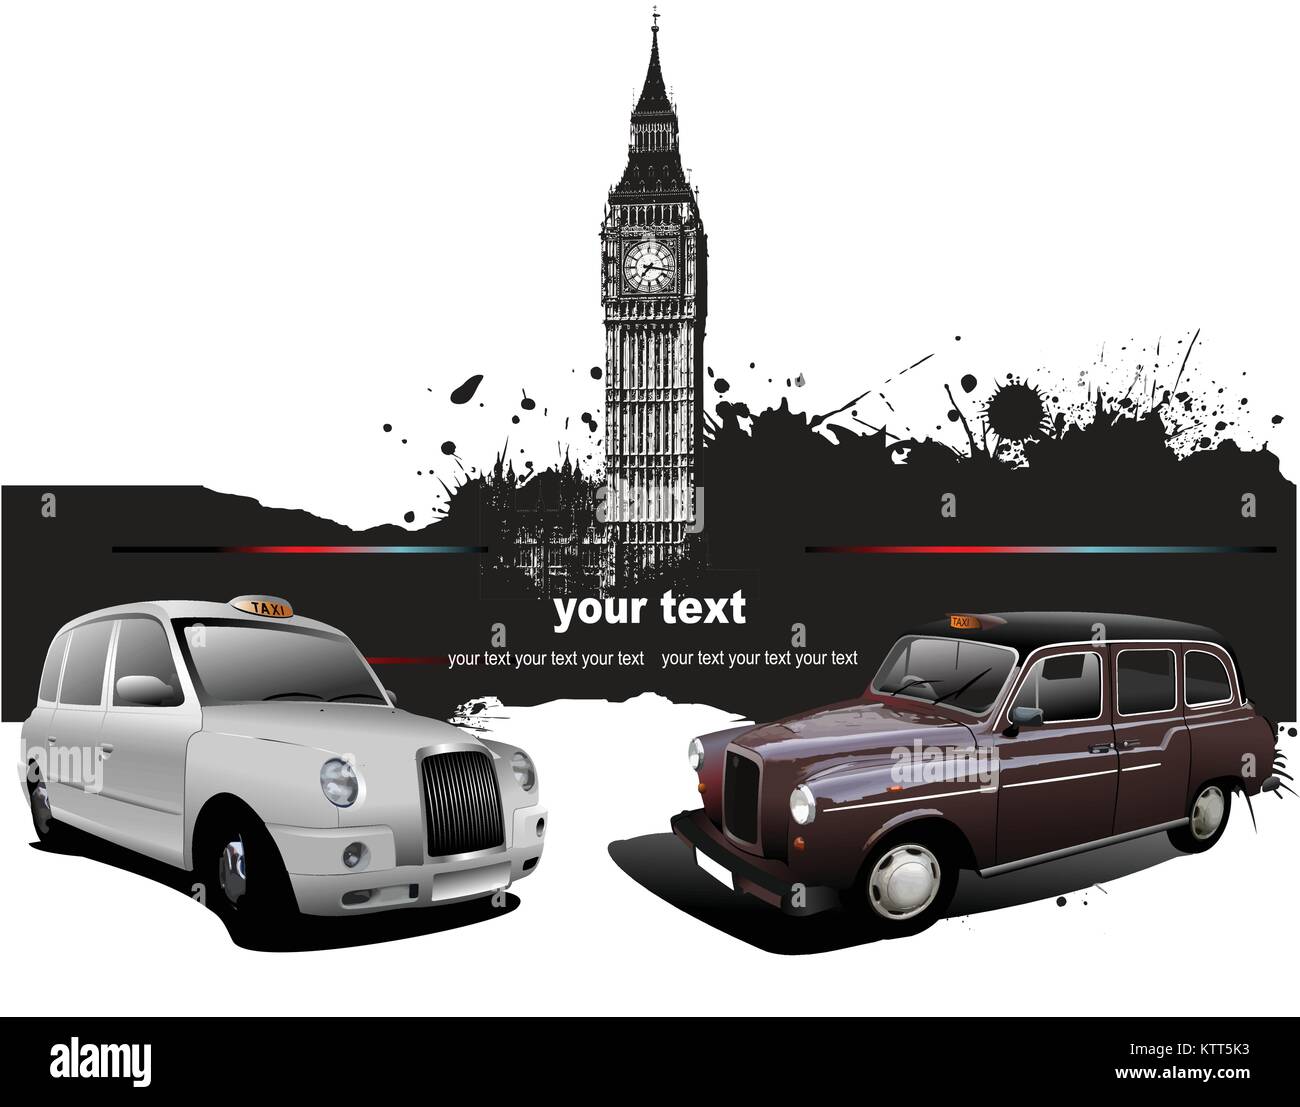 Sfondo di Londra con il Big Ben e due taxicabs. Illustrazione Vettoriale Illustrazione Vettoriale